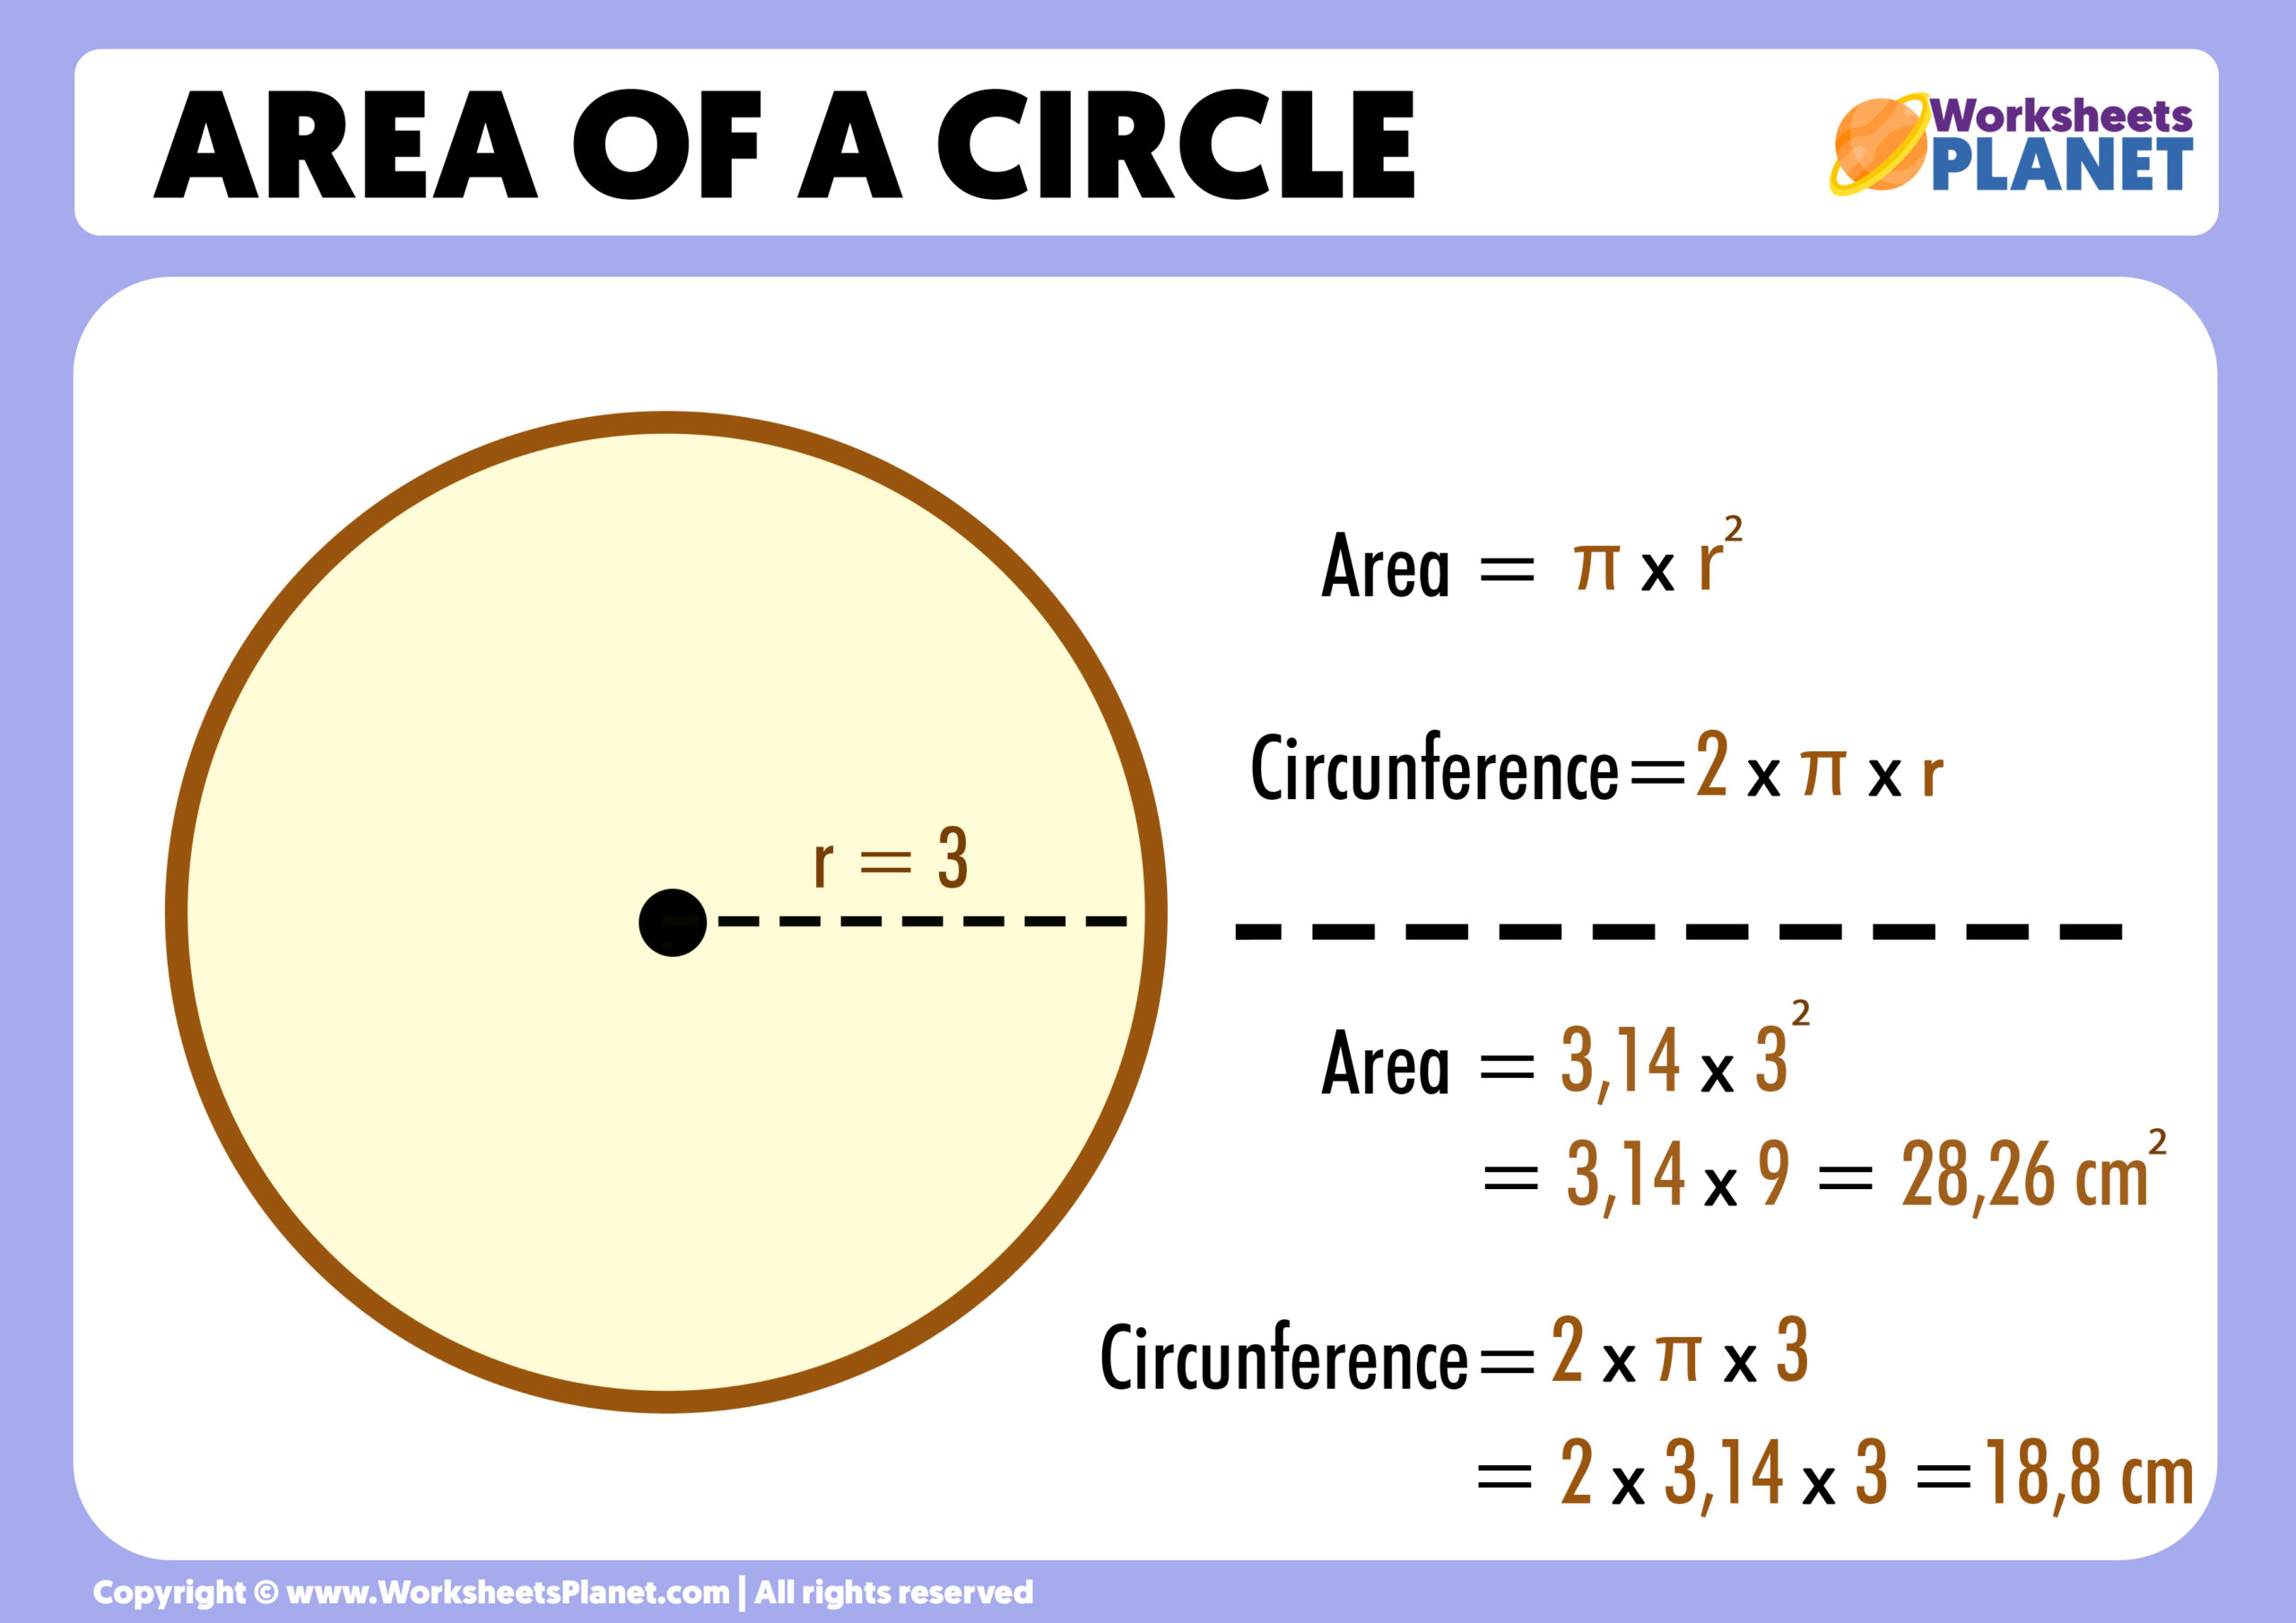 Calculadora area de circulo